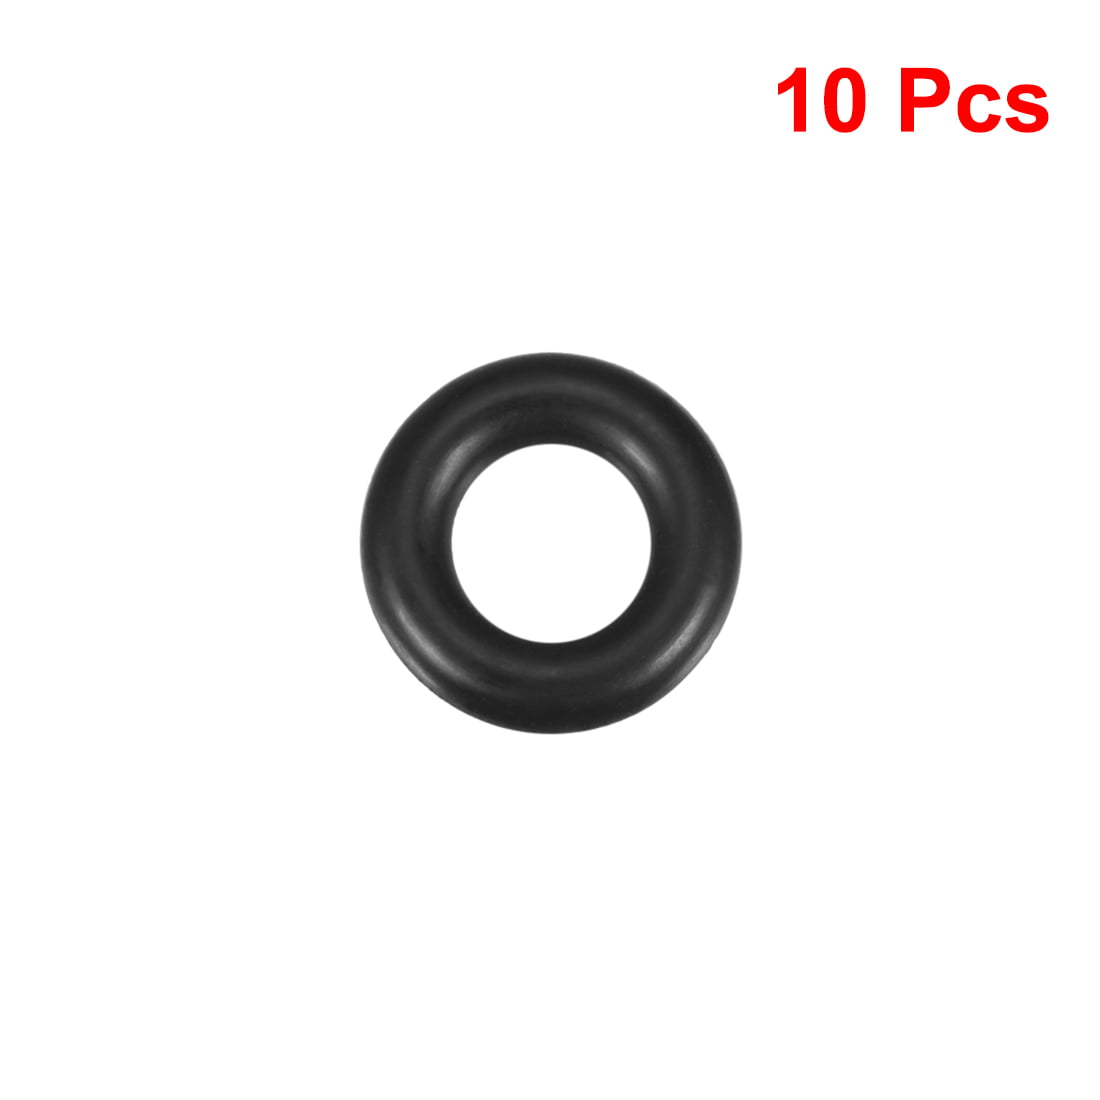 Oil-Resistant Buna N O-Rings 2 1/2'' Diameter 25 EA per Pack -230 